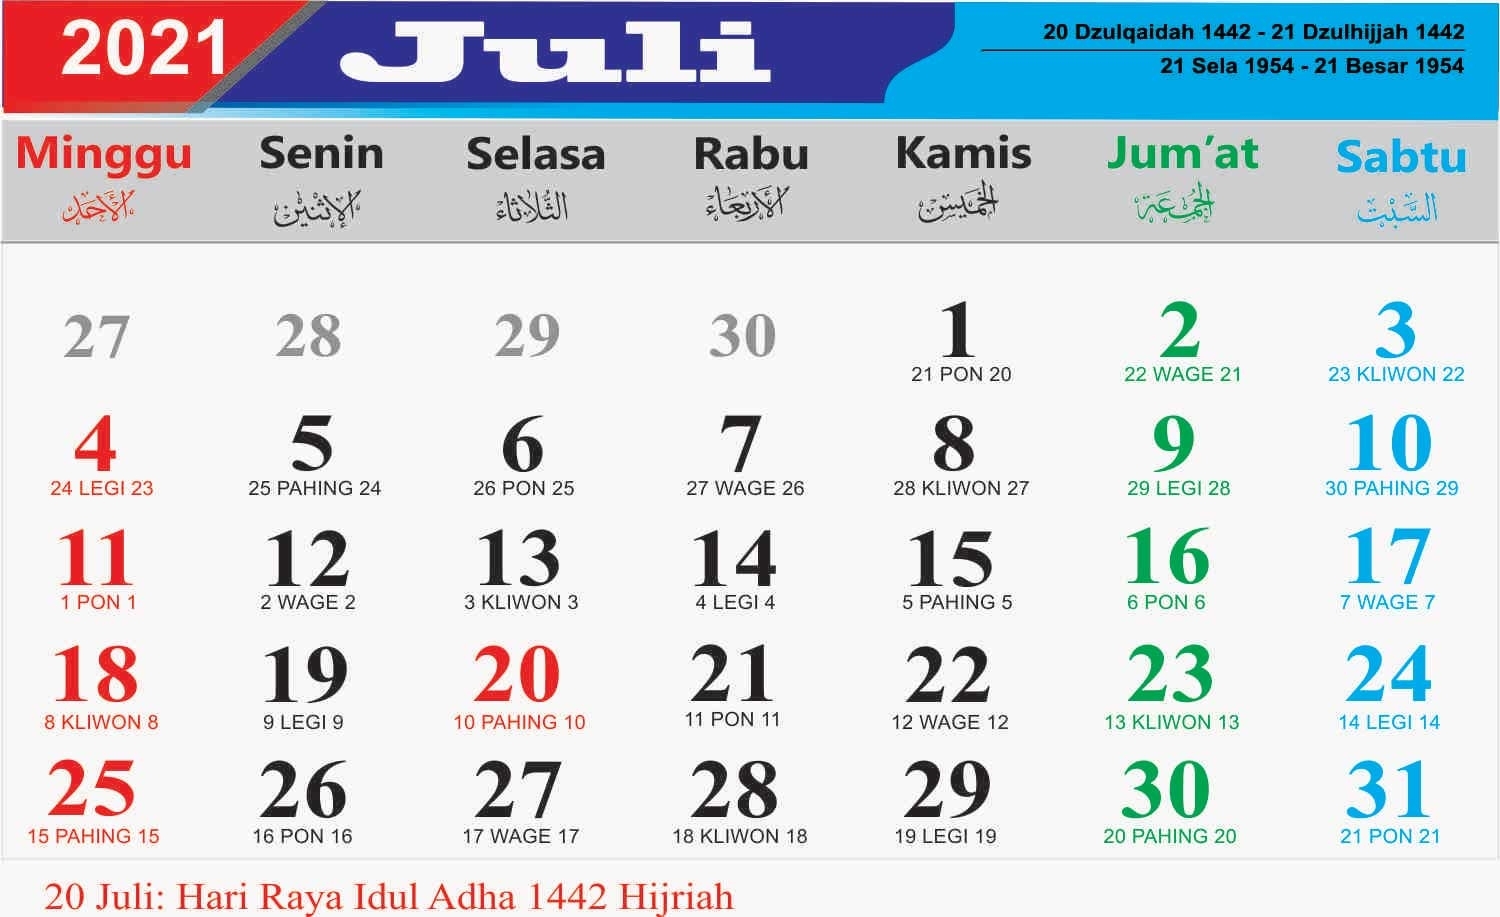 Take Juli 2021 Kalender